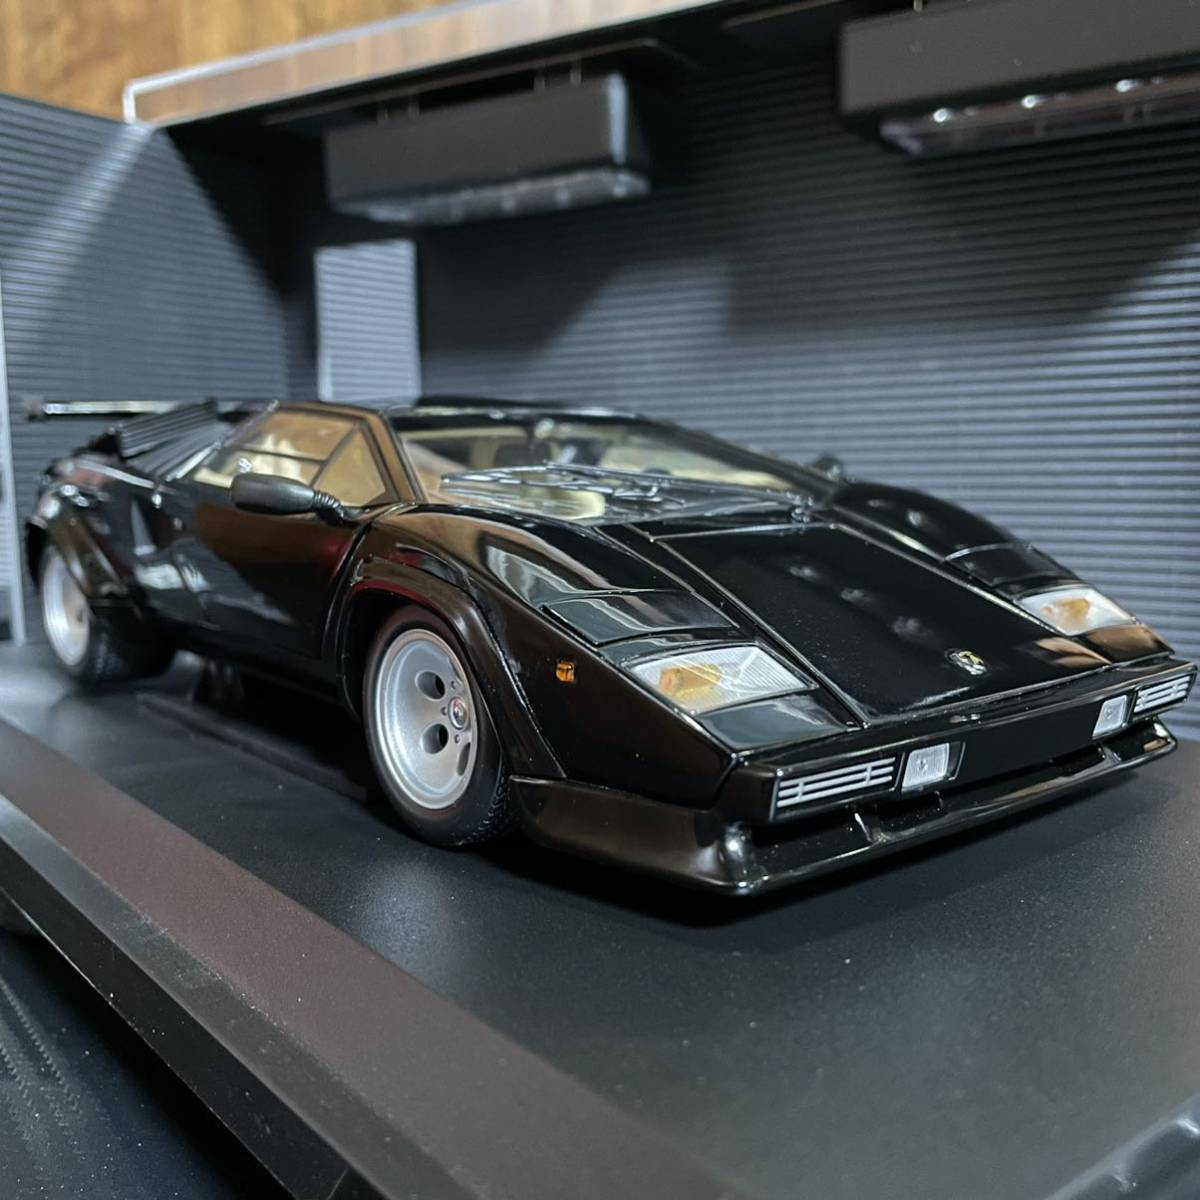  распроданный не выставленный товар Kyosho 1/18 Lamborghini счетчик kLP500 черный 